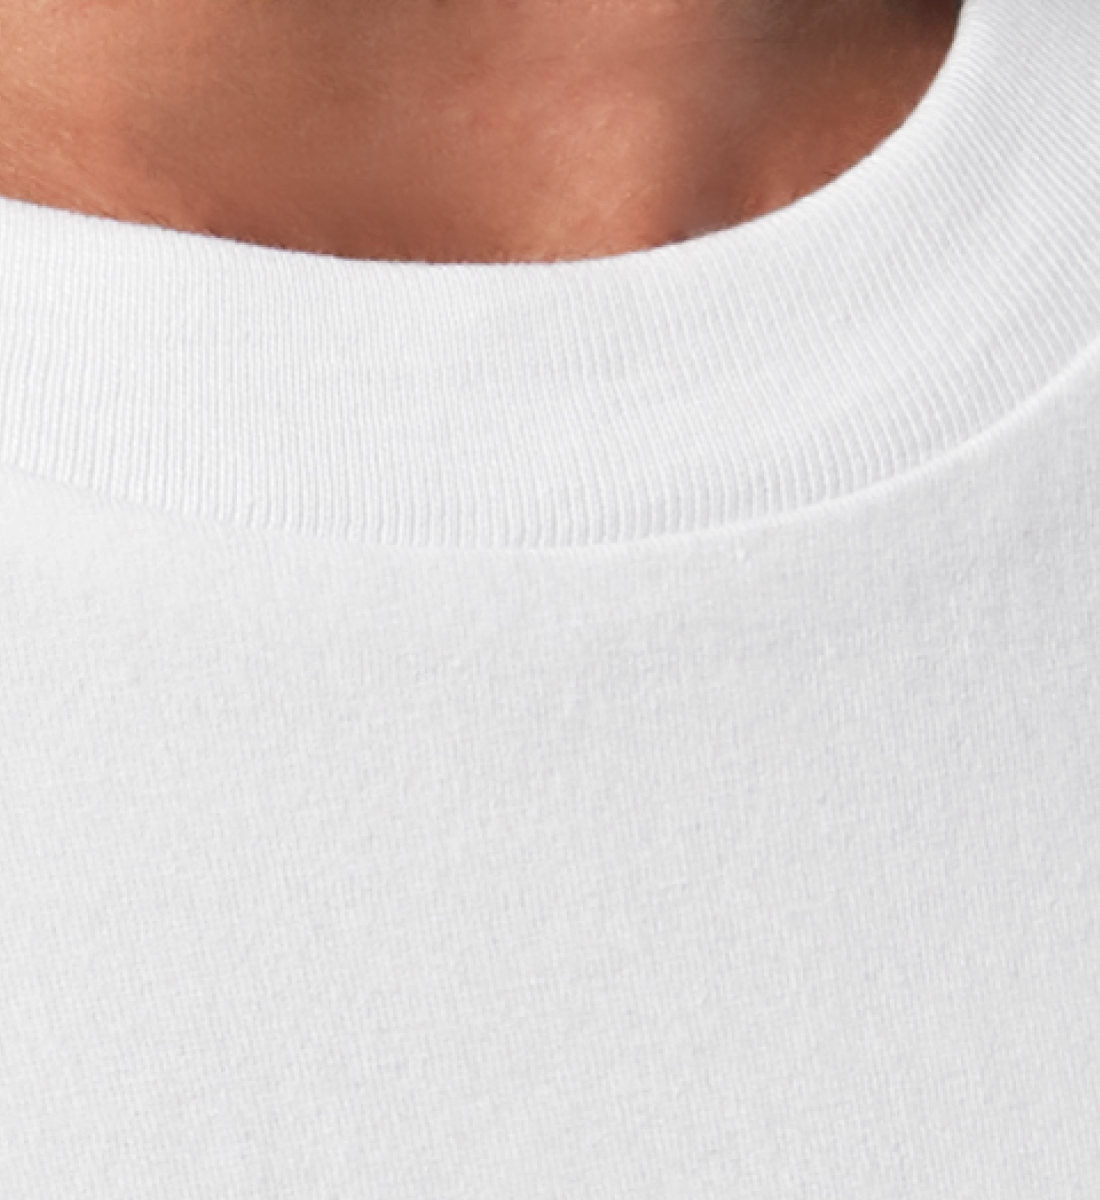 Weißes T-Shirt Unisex Relaxed Fit für Frauen und Männer bedruckt mit dem Design der Roger Rockawoo Kollektion do not ask me